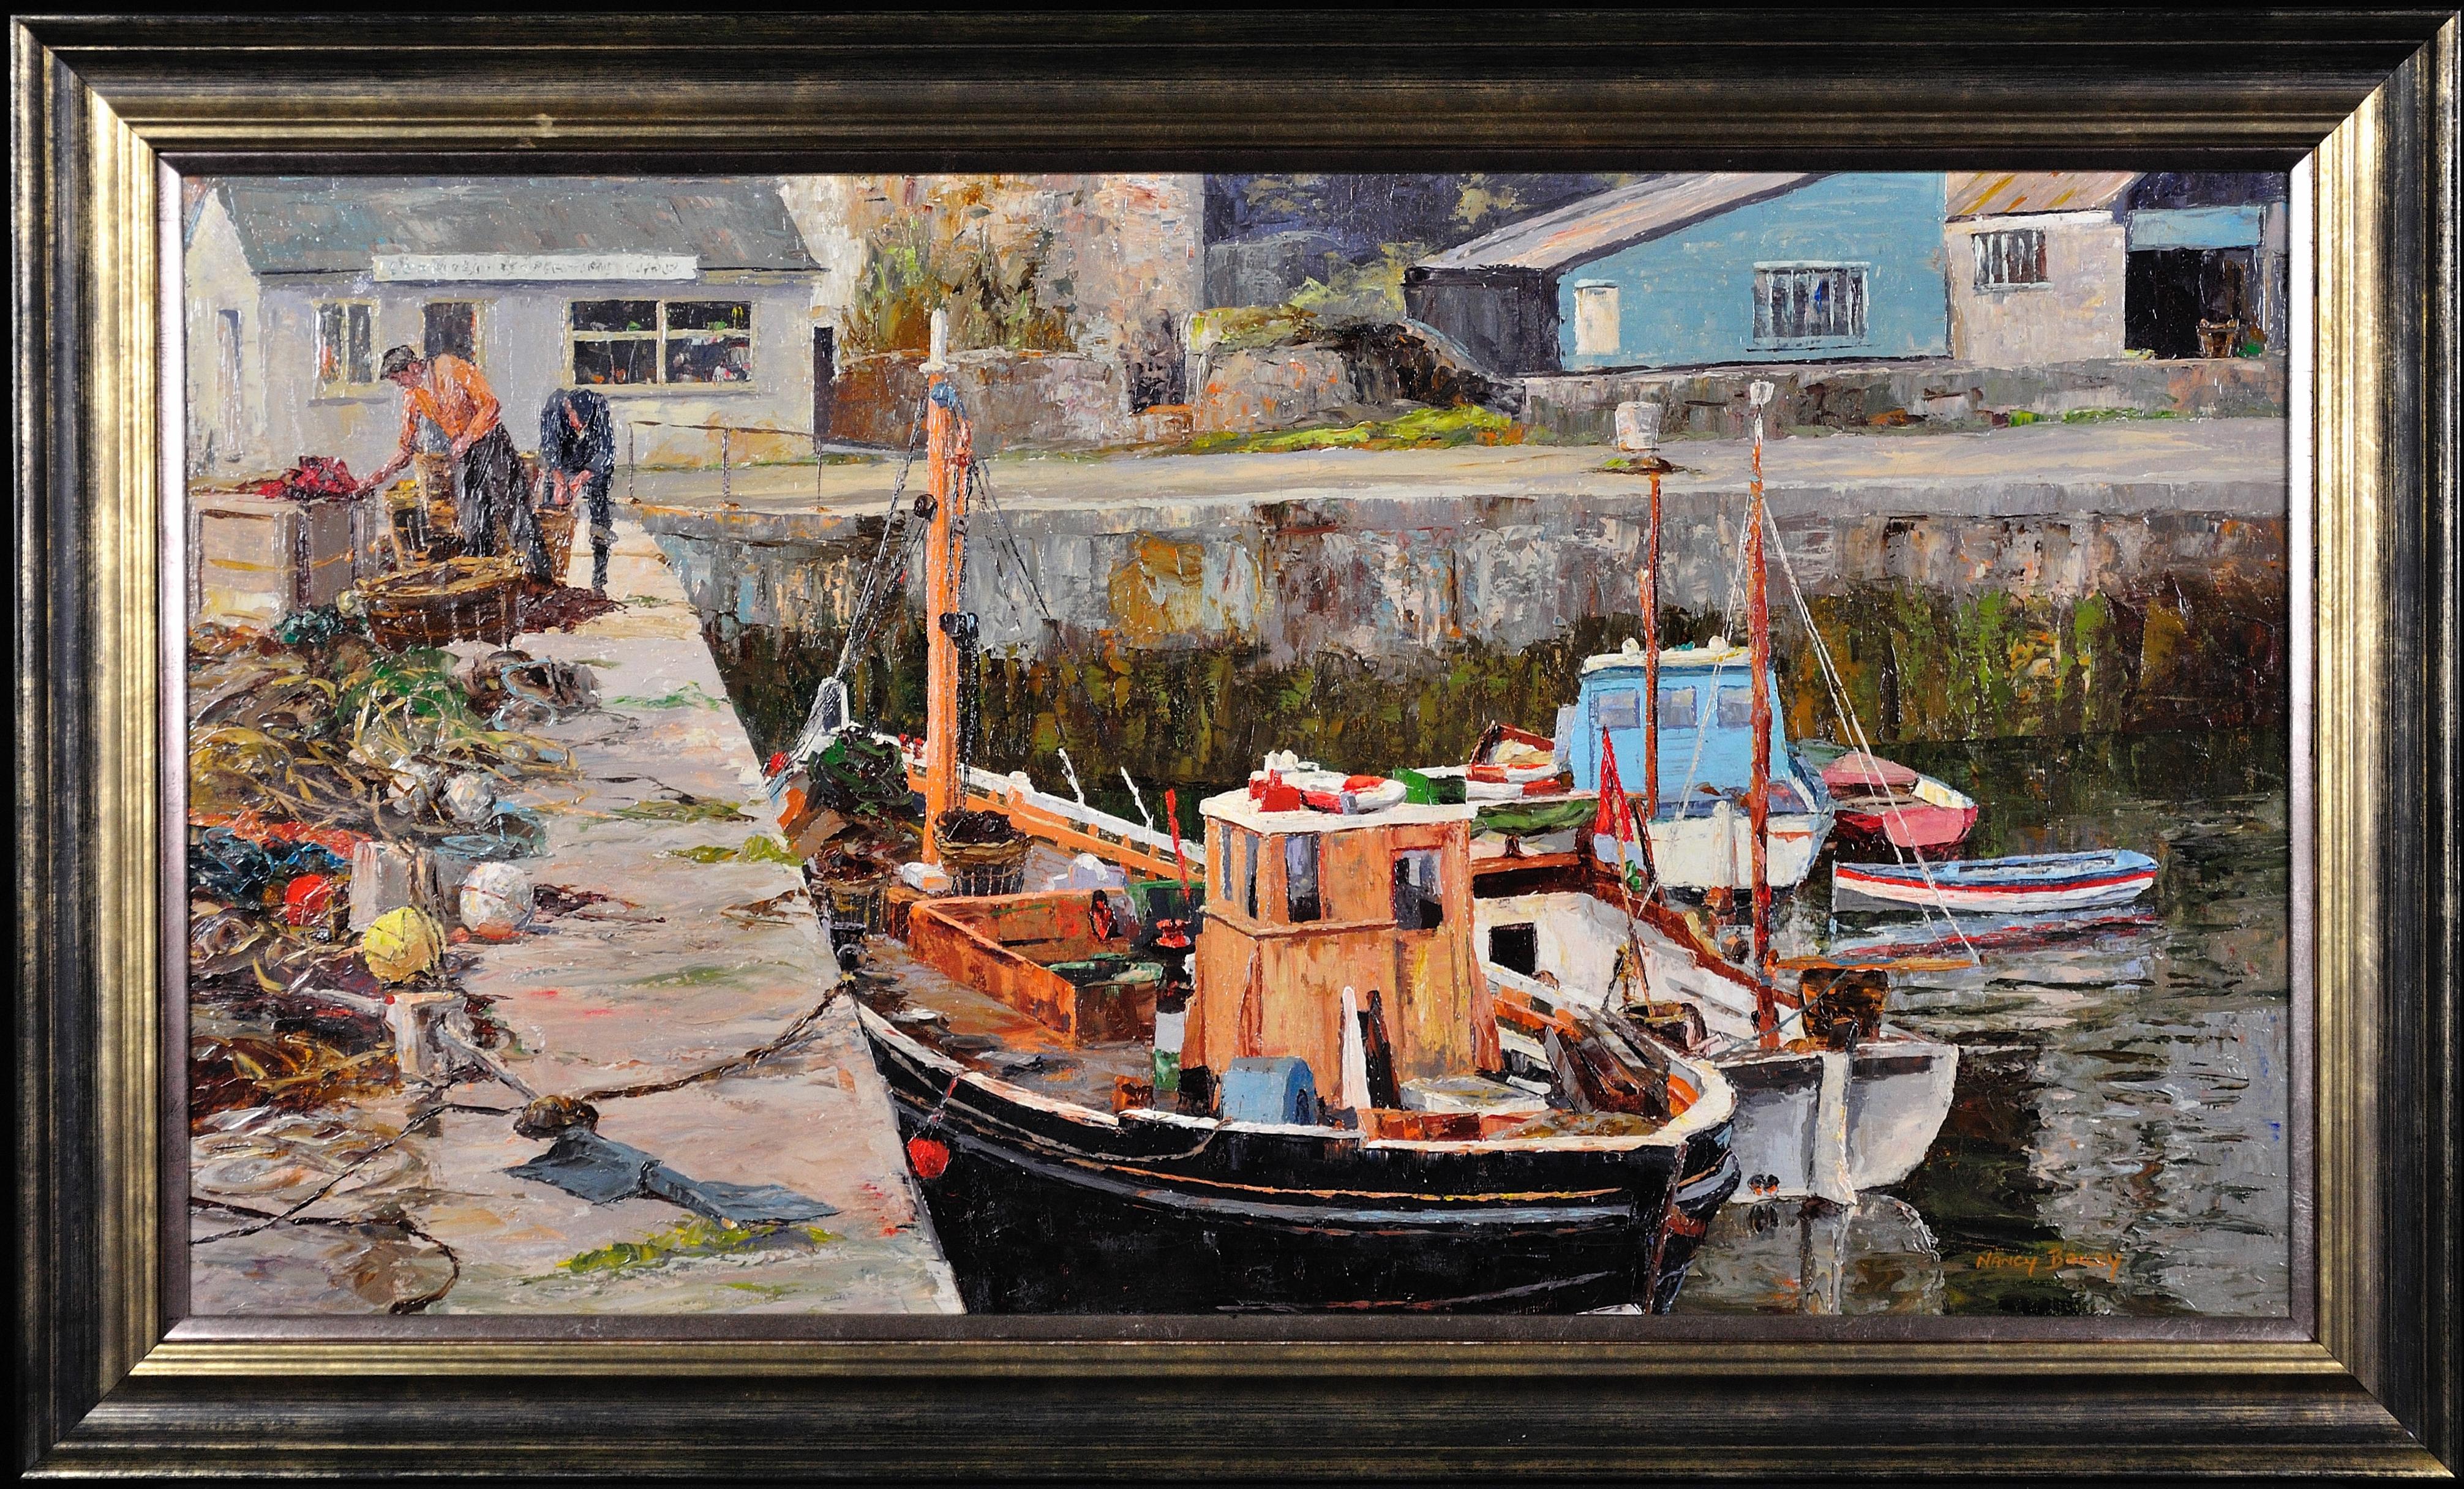 Landscape Painting Nancy Bailey - Boîtes de travail, Porthleven, Cornouailles. Pots de pêche.Impasto.Harbor.Jetty.